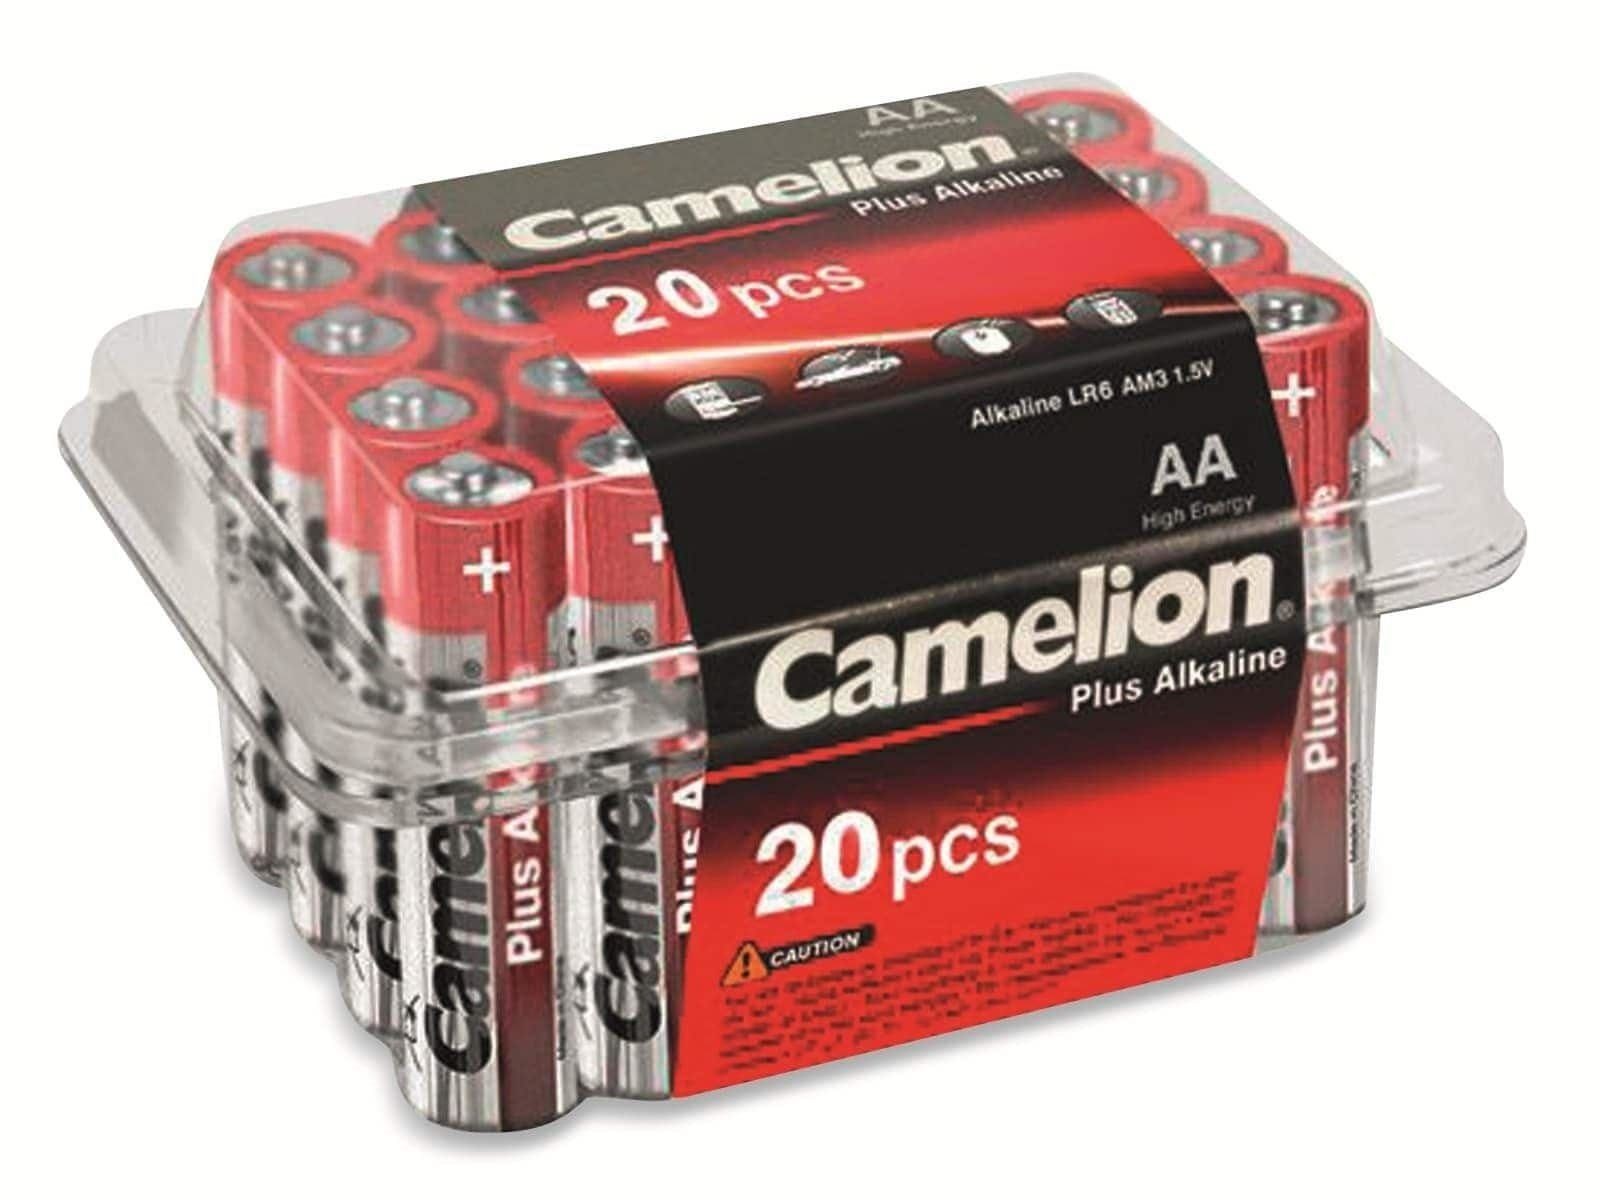 CAMELION LR6, Batterie Plus-Alkaline, 20 Camelion Mignon-Batterie,